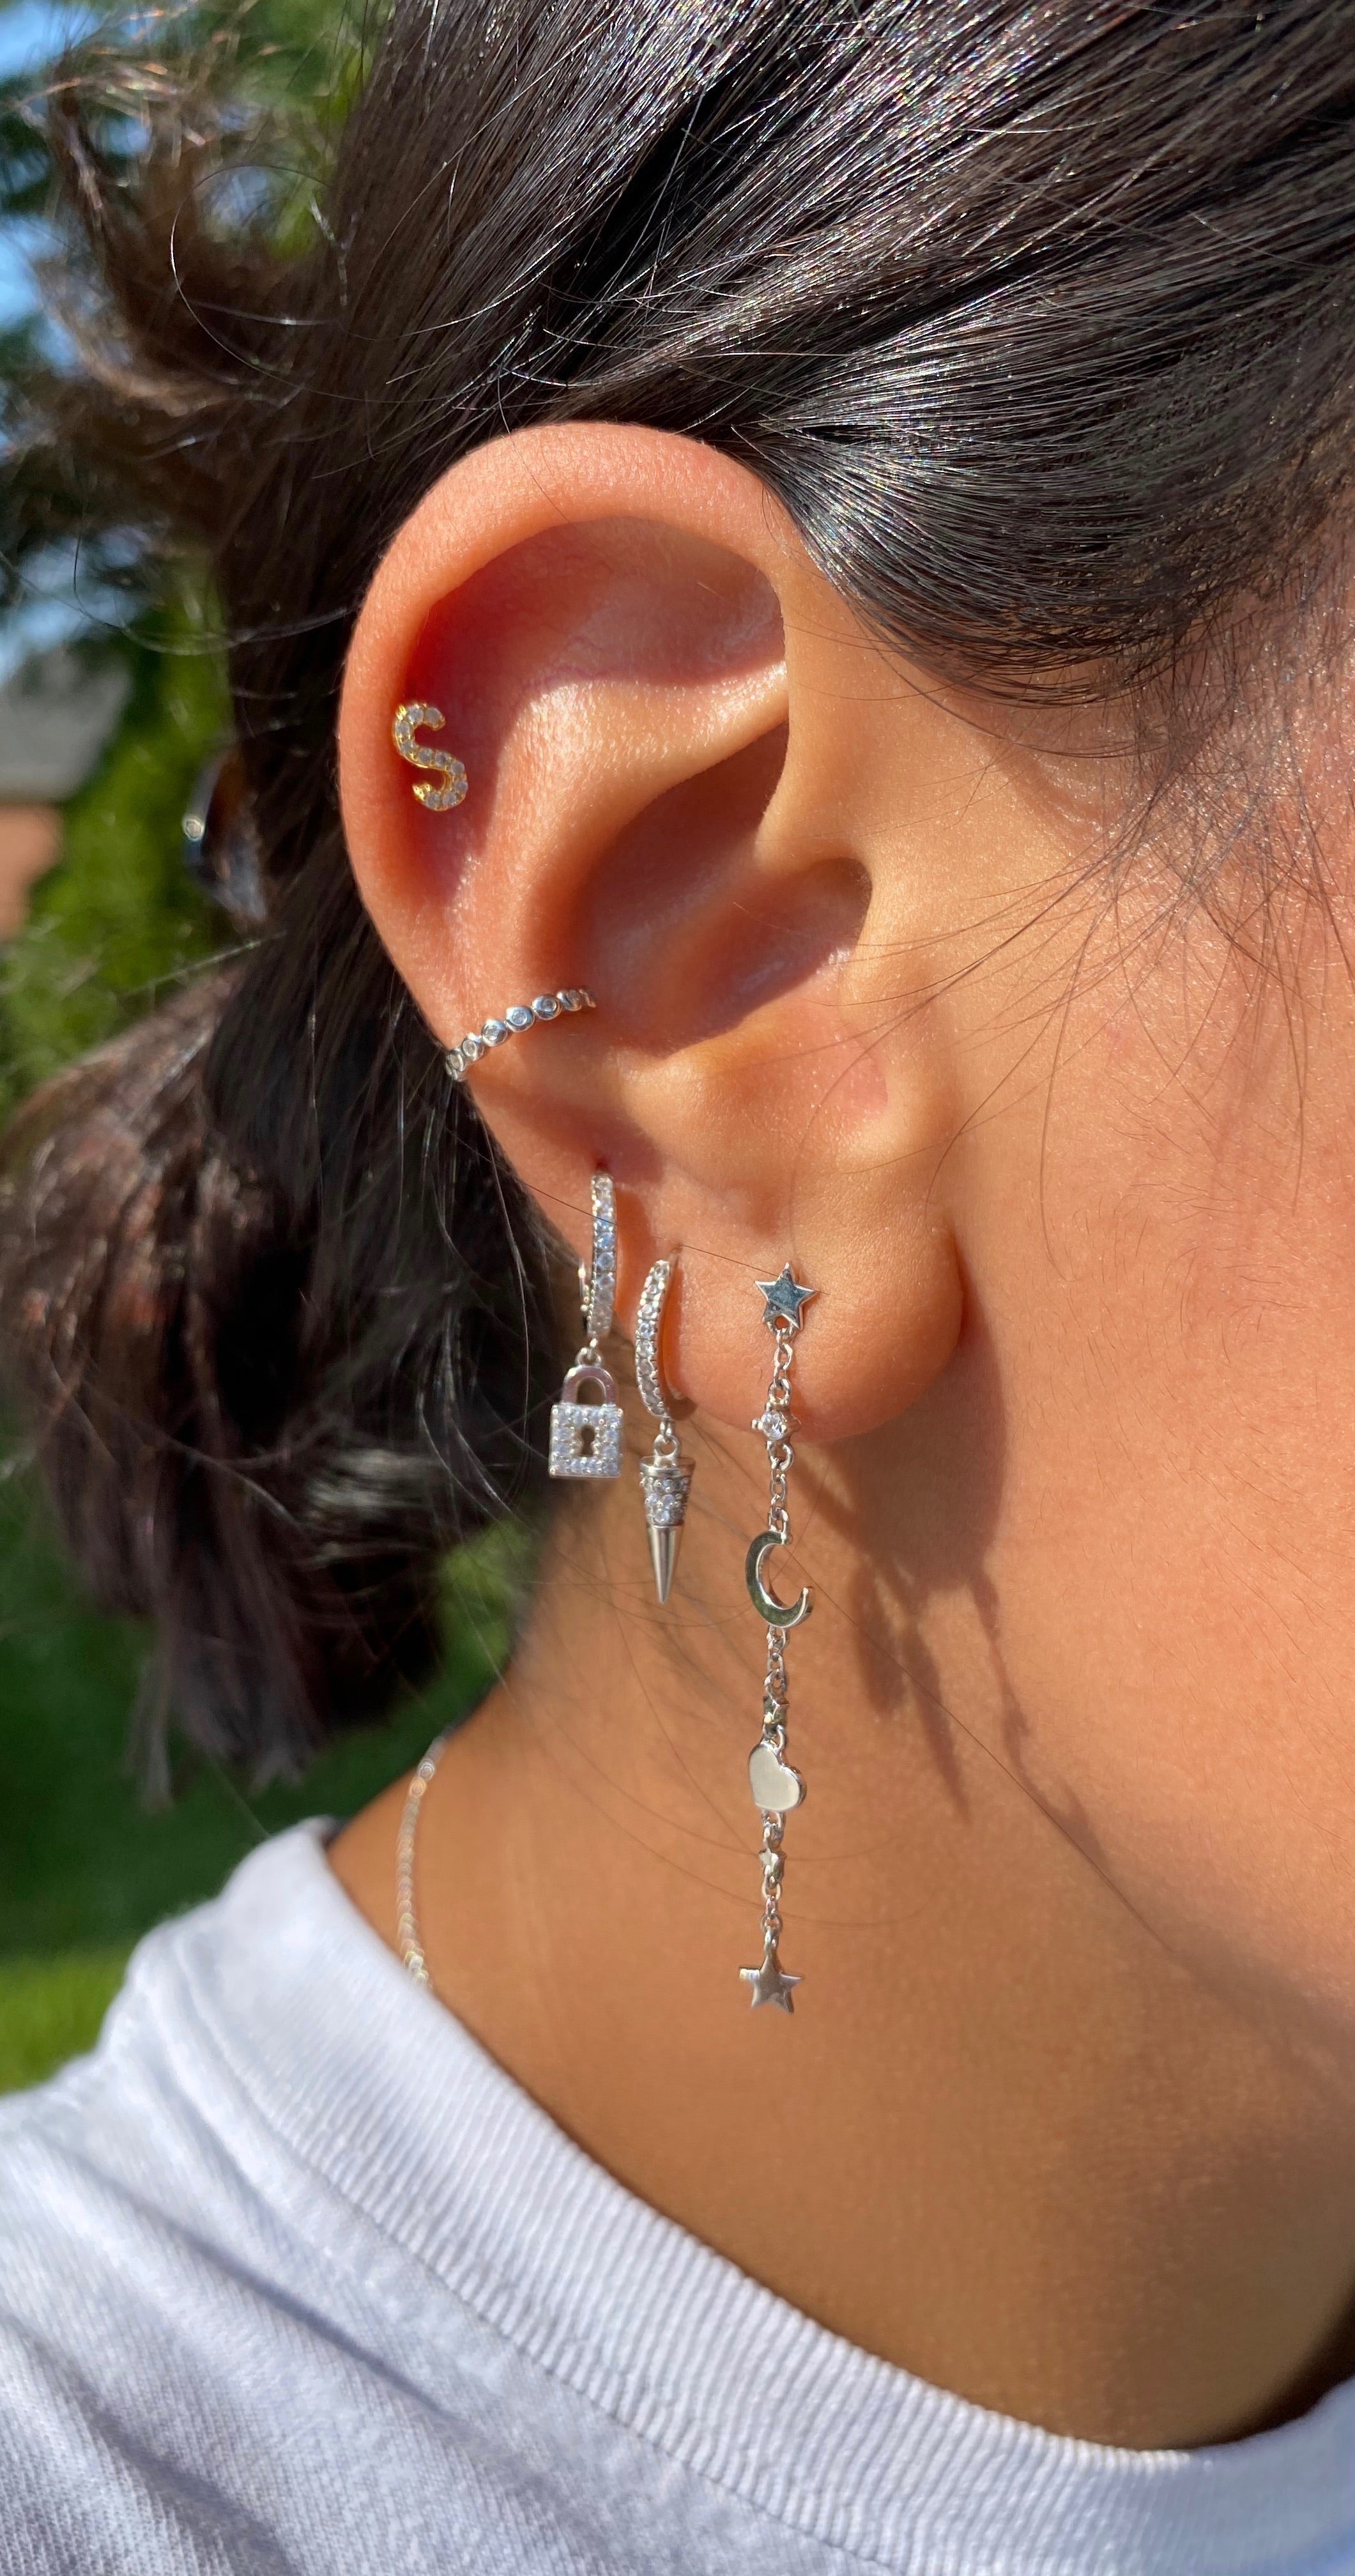 KEY & LOCK huggies earrings